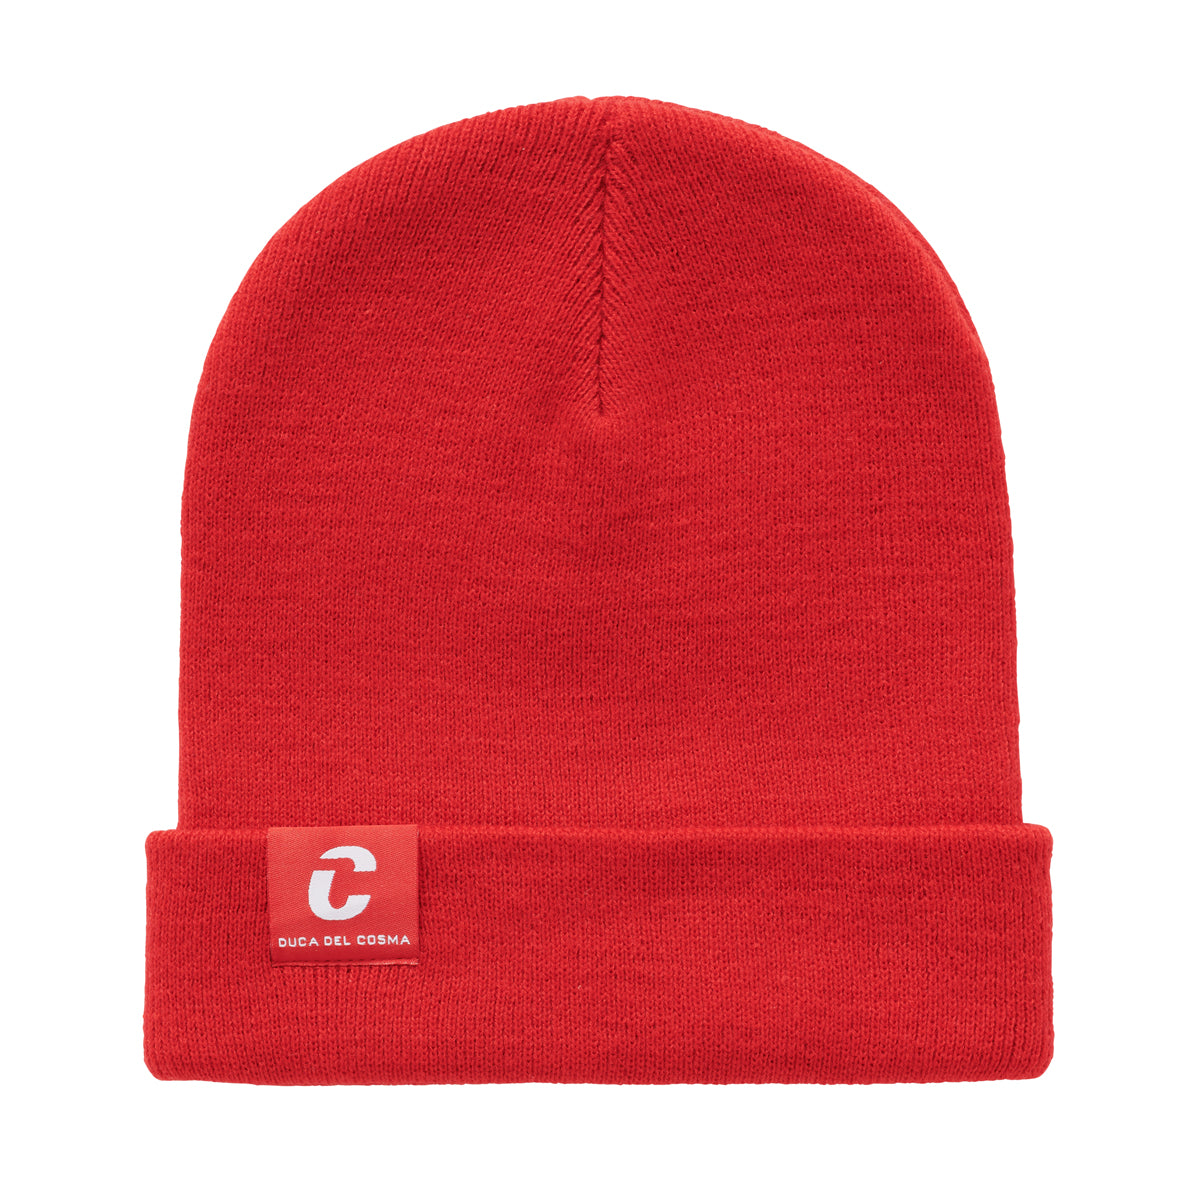 gorra roja